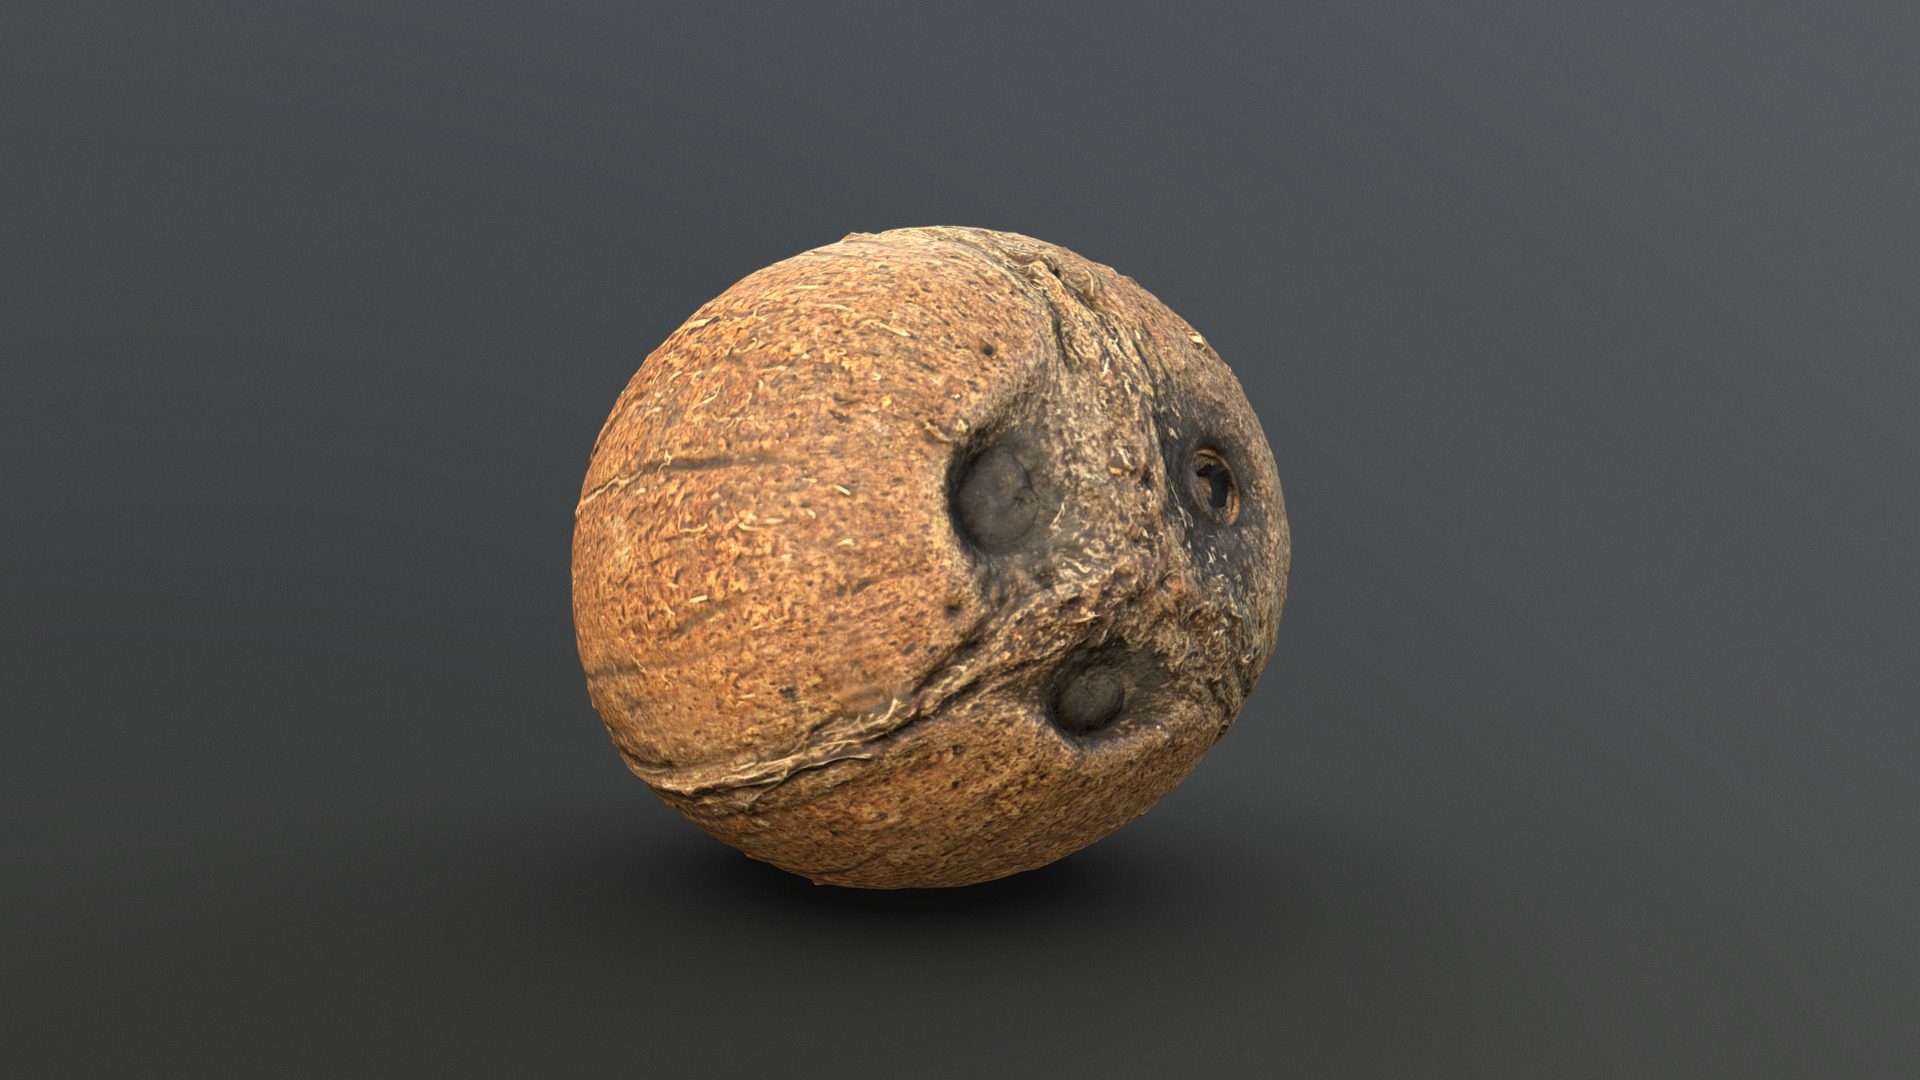 3D model Coconut – retopo 8K PBR - This is a 3D model of the Coconut - retopo 8K PBR. The 3D model is about a close up of a potato.